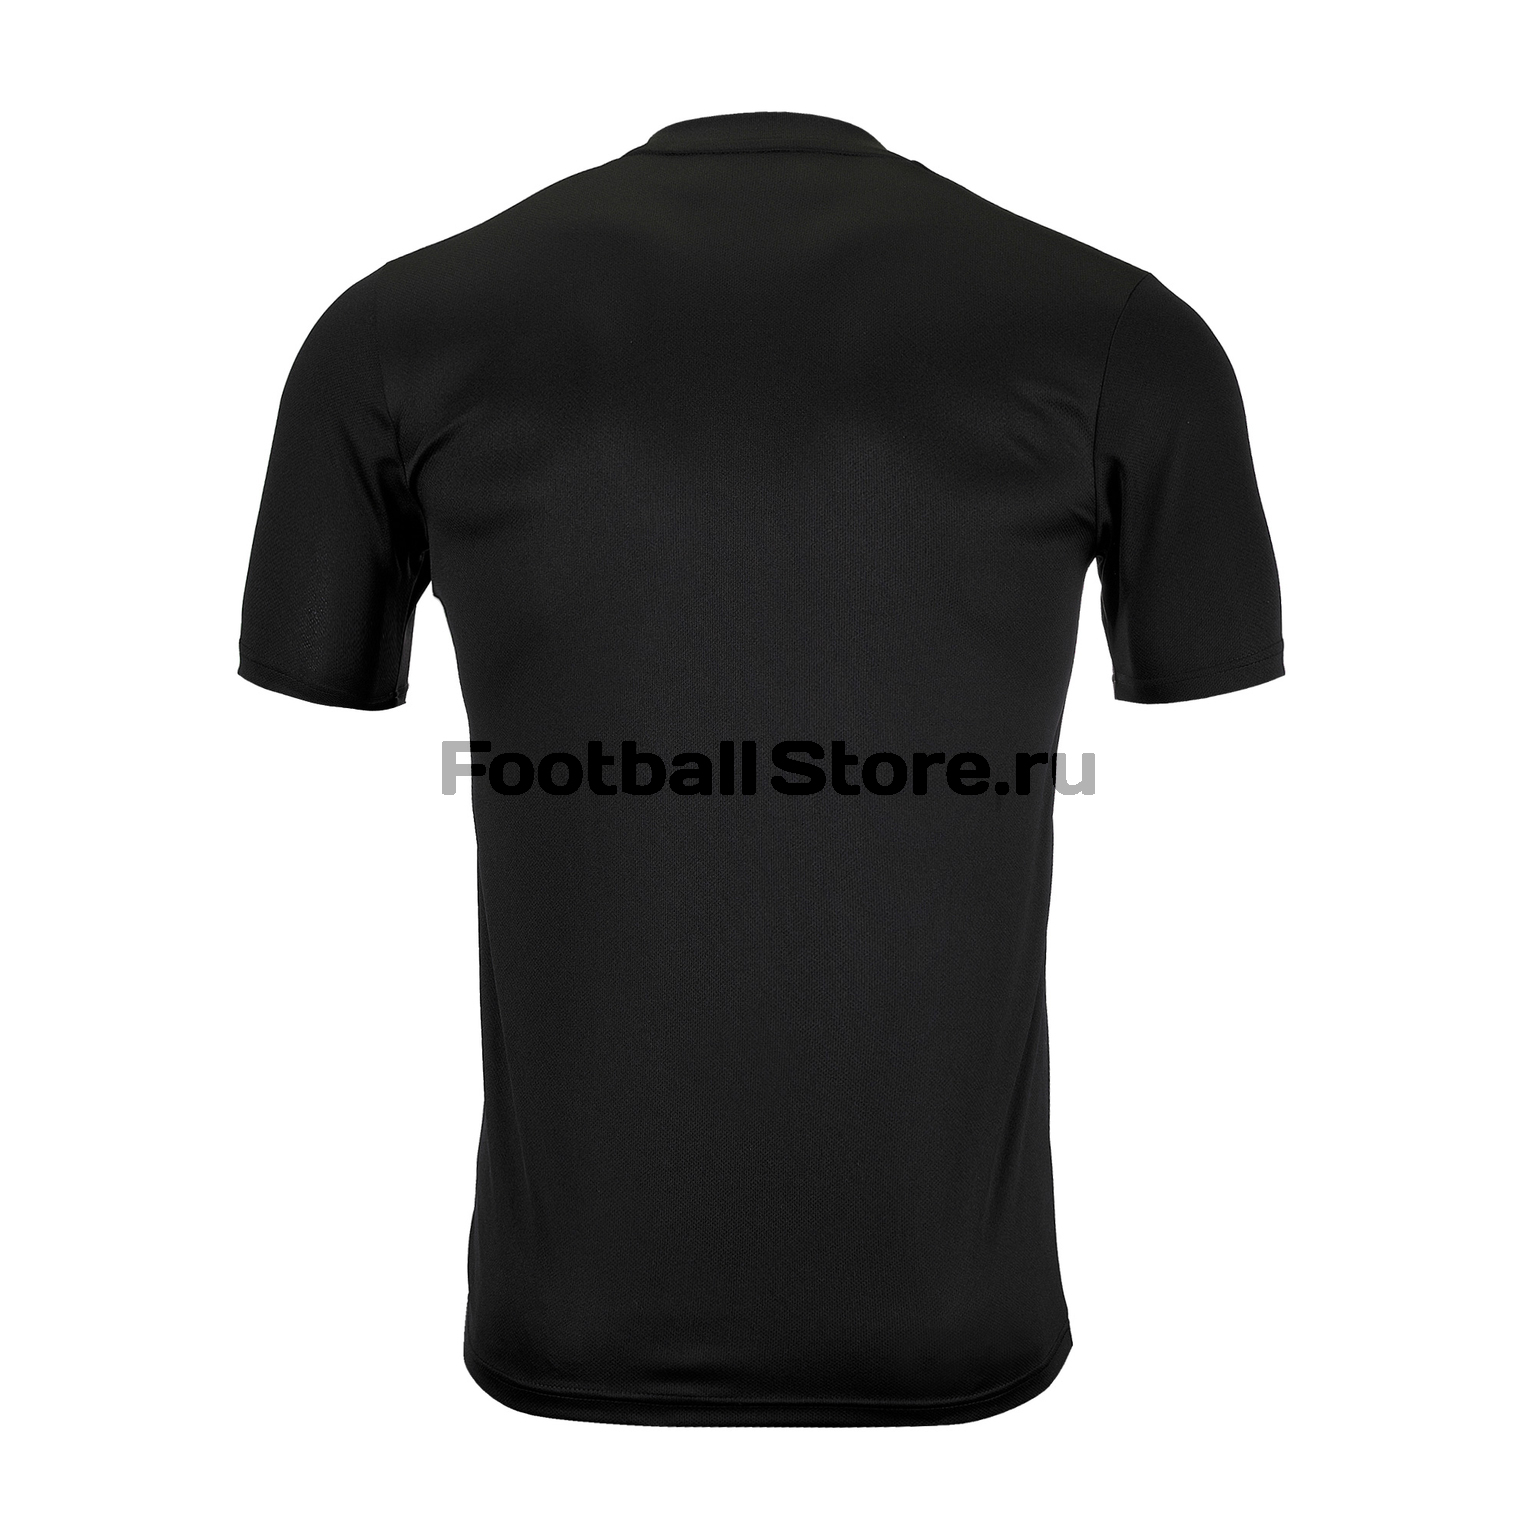 Футболка тренировочная Adidas Tan DY5854